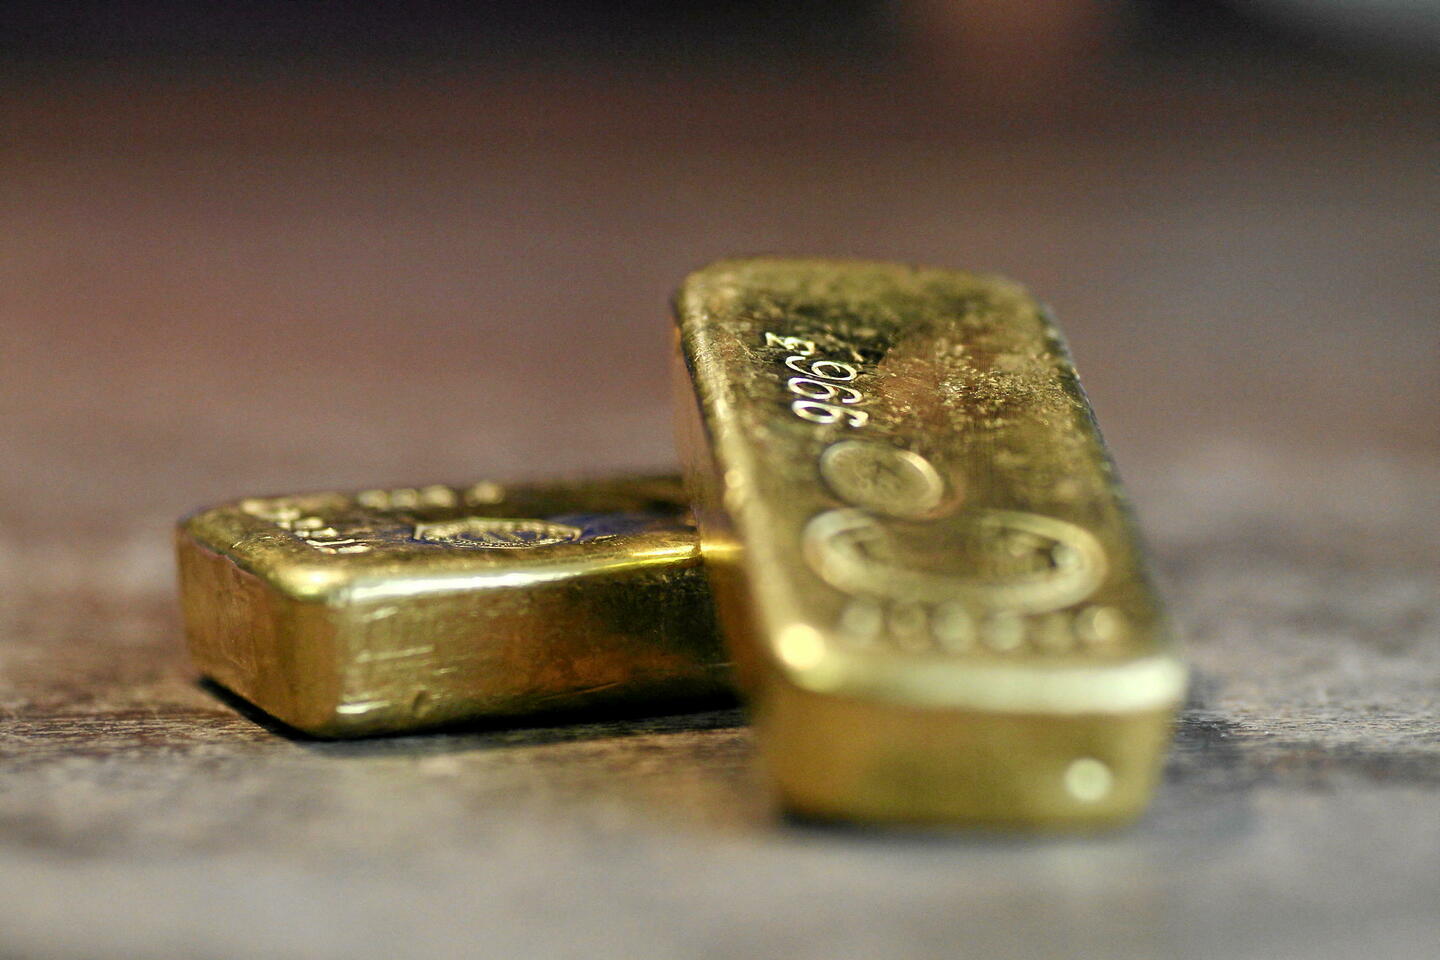 Ce mystère des lingots d'or venus de Russie qui agite la Suisse – L'Express